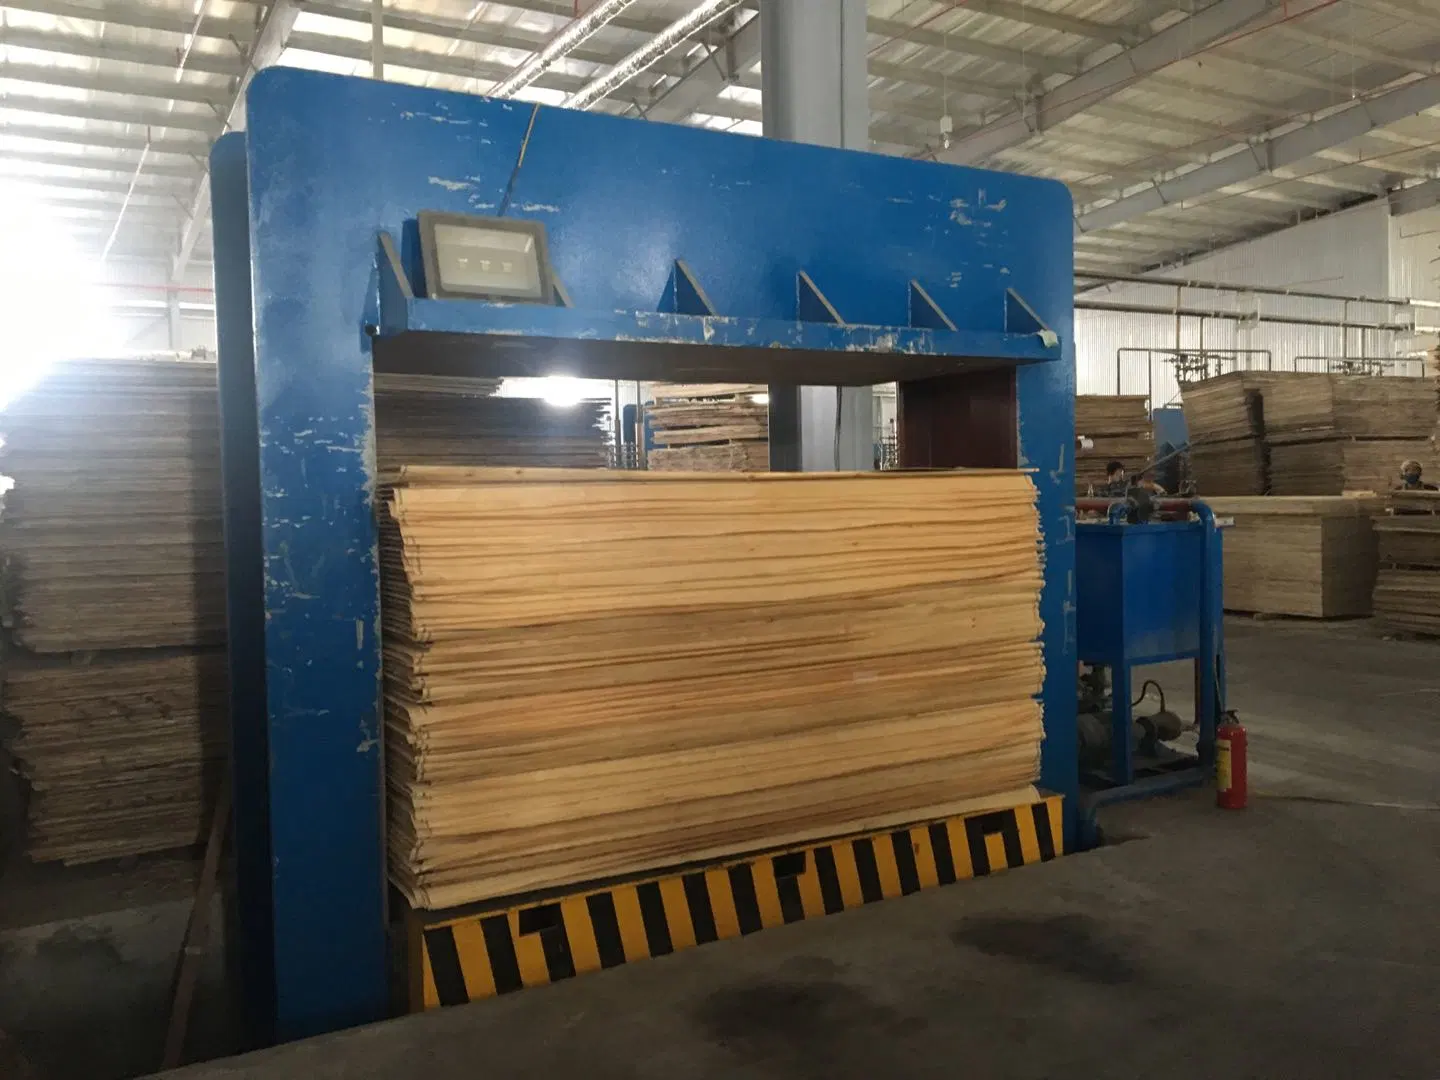 آلة الضغط البارد للخشب للبيع تستخدم في صناعة الخشب الرقائقي على النواة.